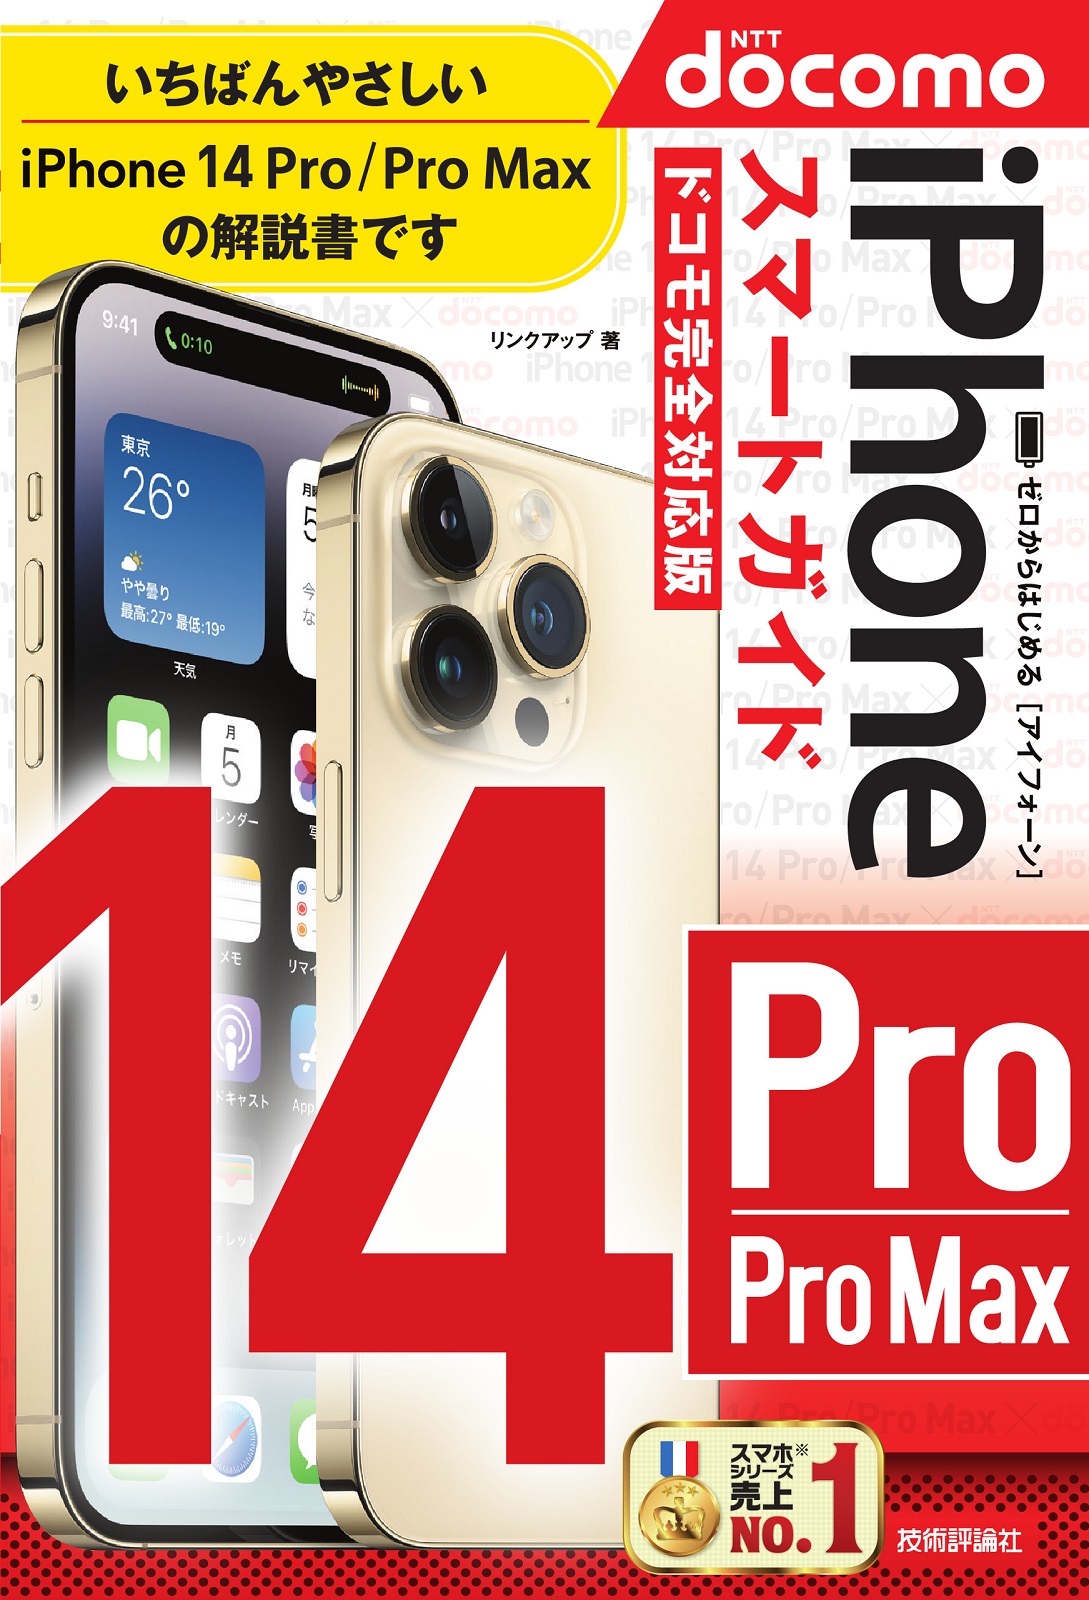 ゼロからはじめる iPhone 14 Pro/Pro Max スマートガイド ドコモ完全対応版